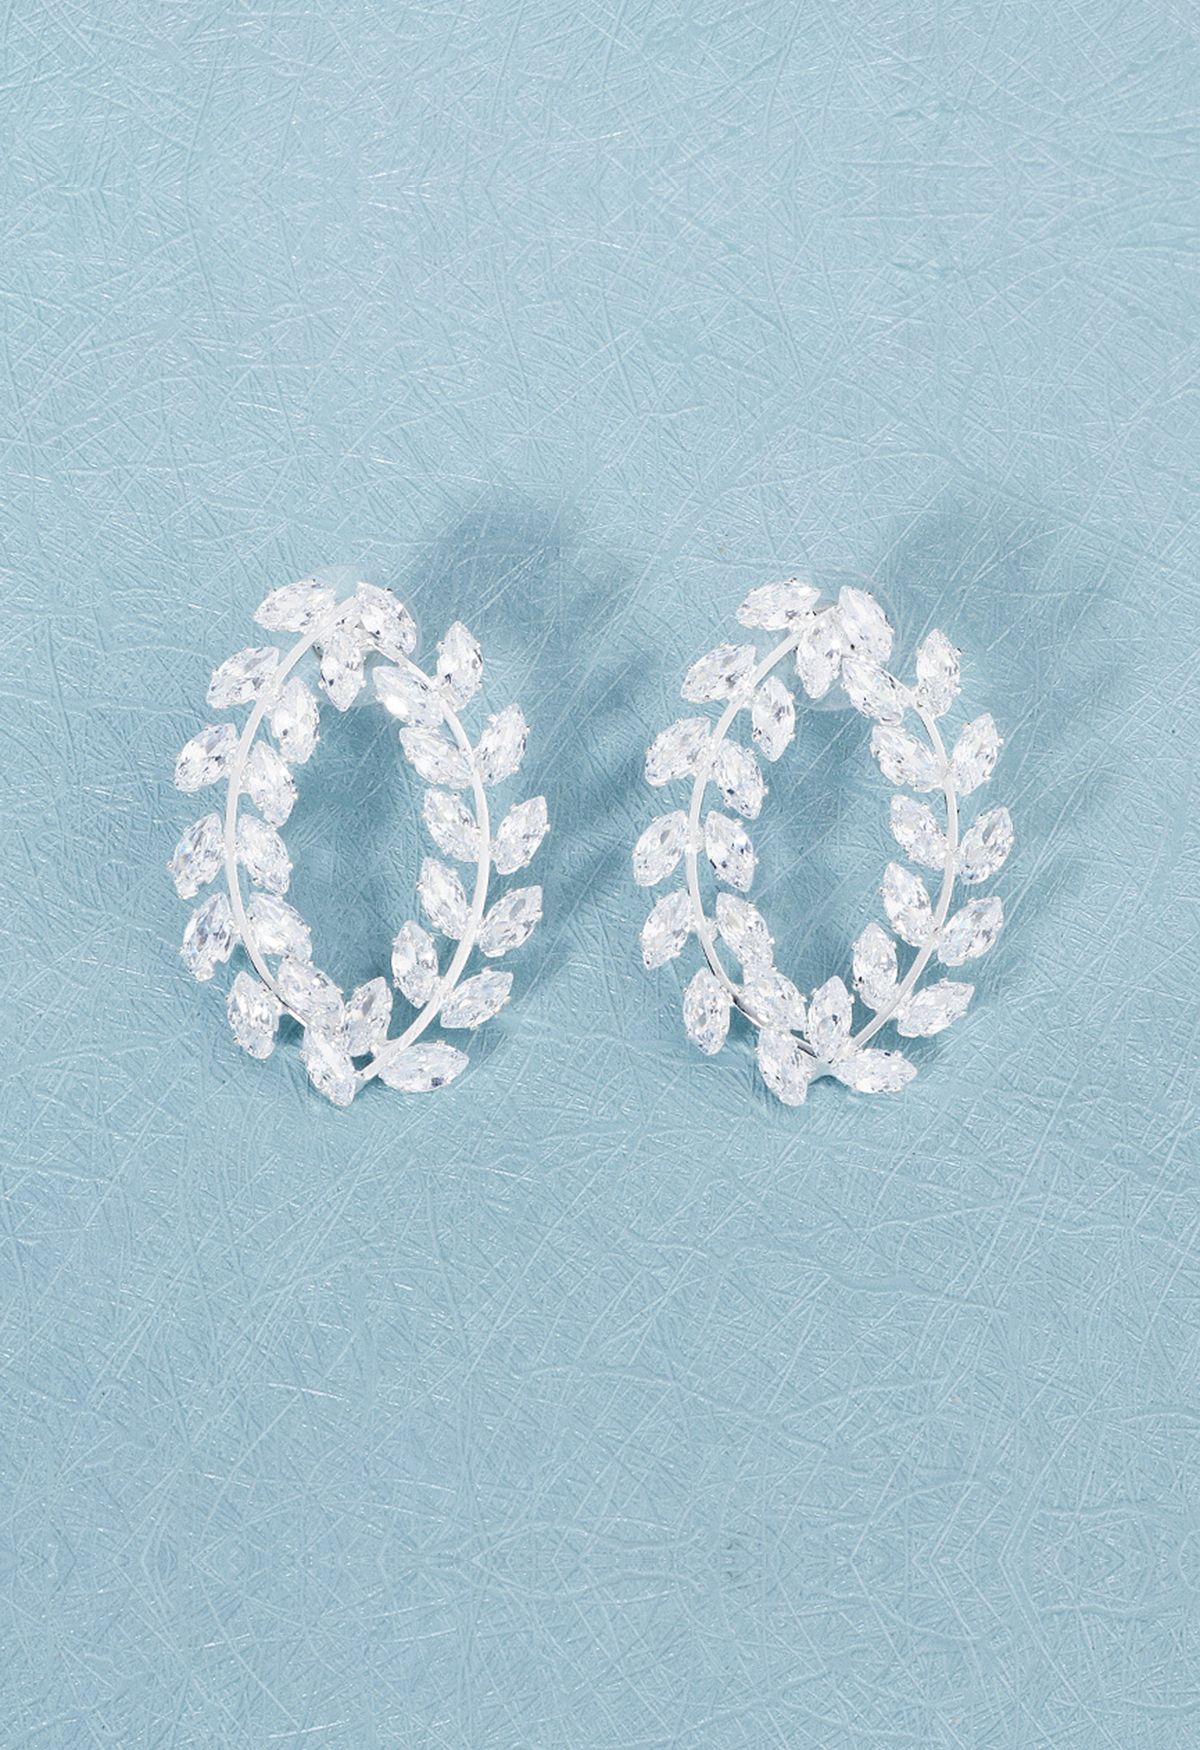 Olive Branch Diamond Earrings